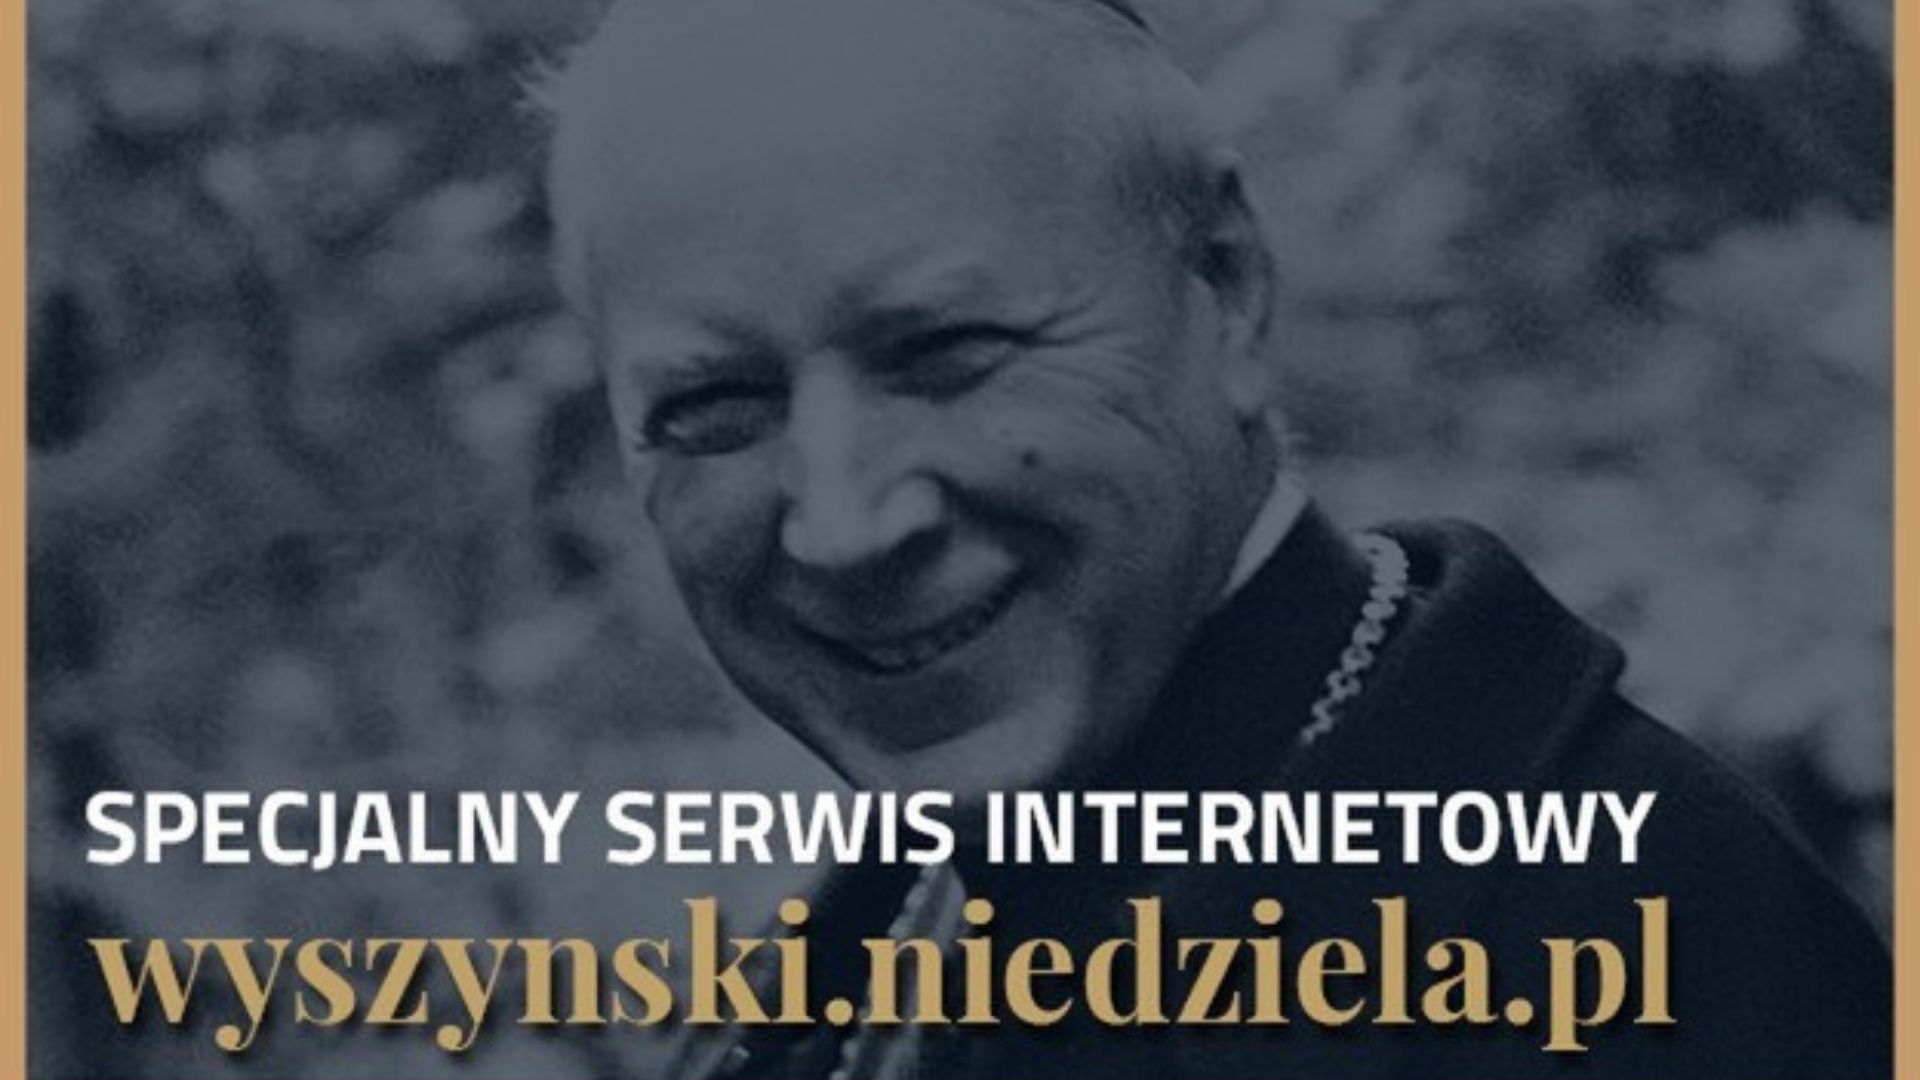 Serwis internetowy beatyfikacji Wyszyńskiego